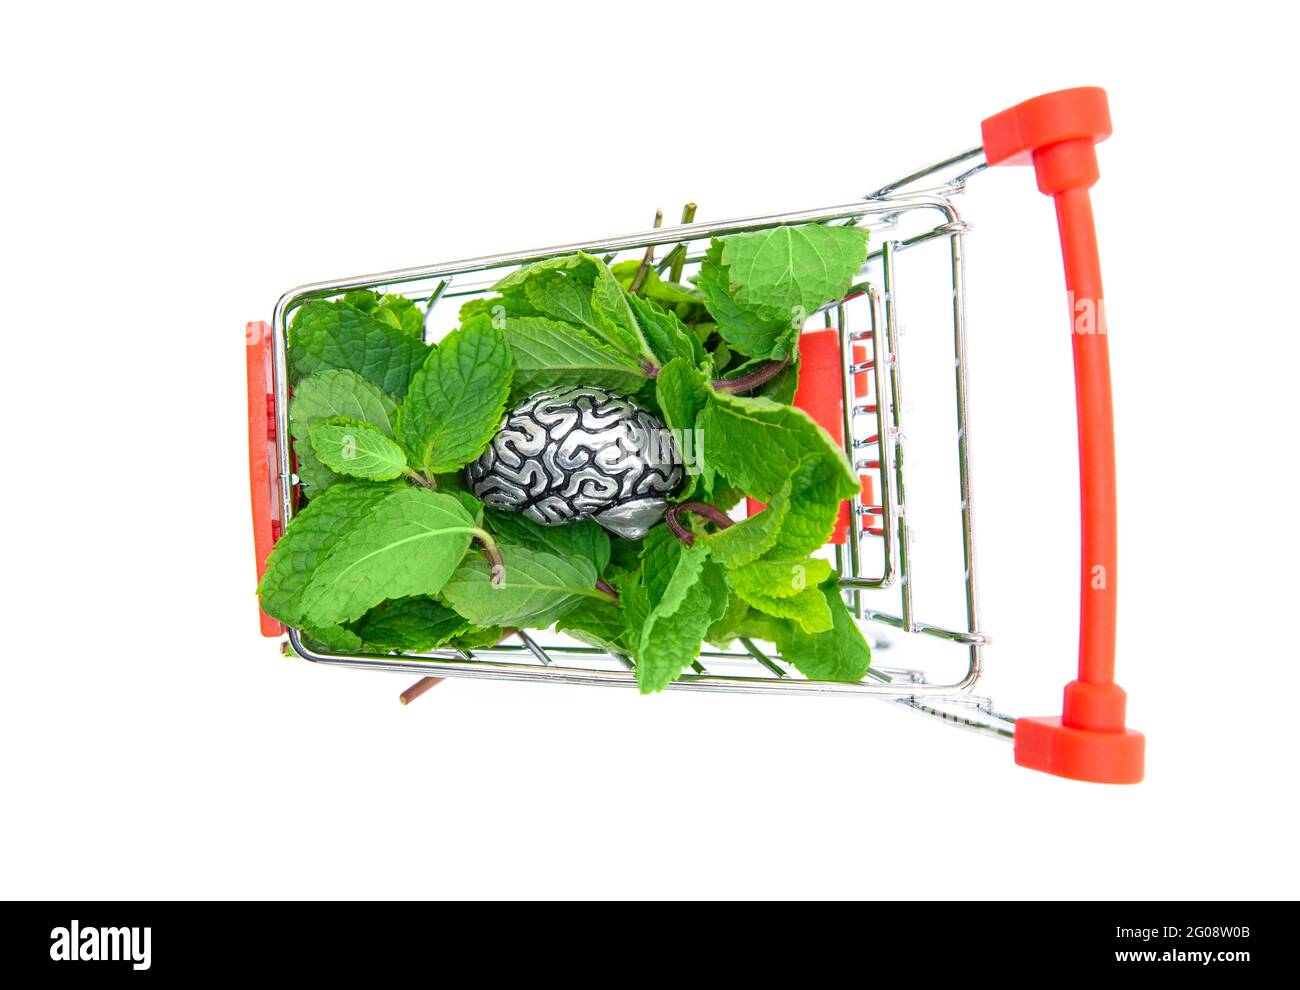 Copia di acciaio di un cervello umano su un mucchio di foglie di menta fresca in un piccolo carrello della spesa. Vista dall'alto, isolata su bianco. Idee creative. Foto Stock